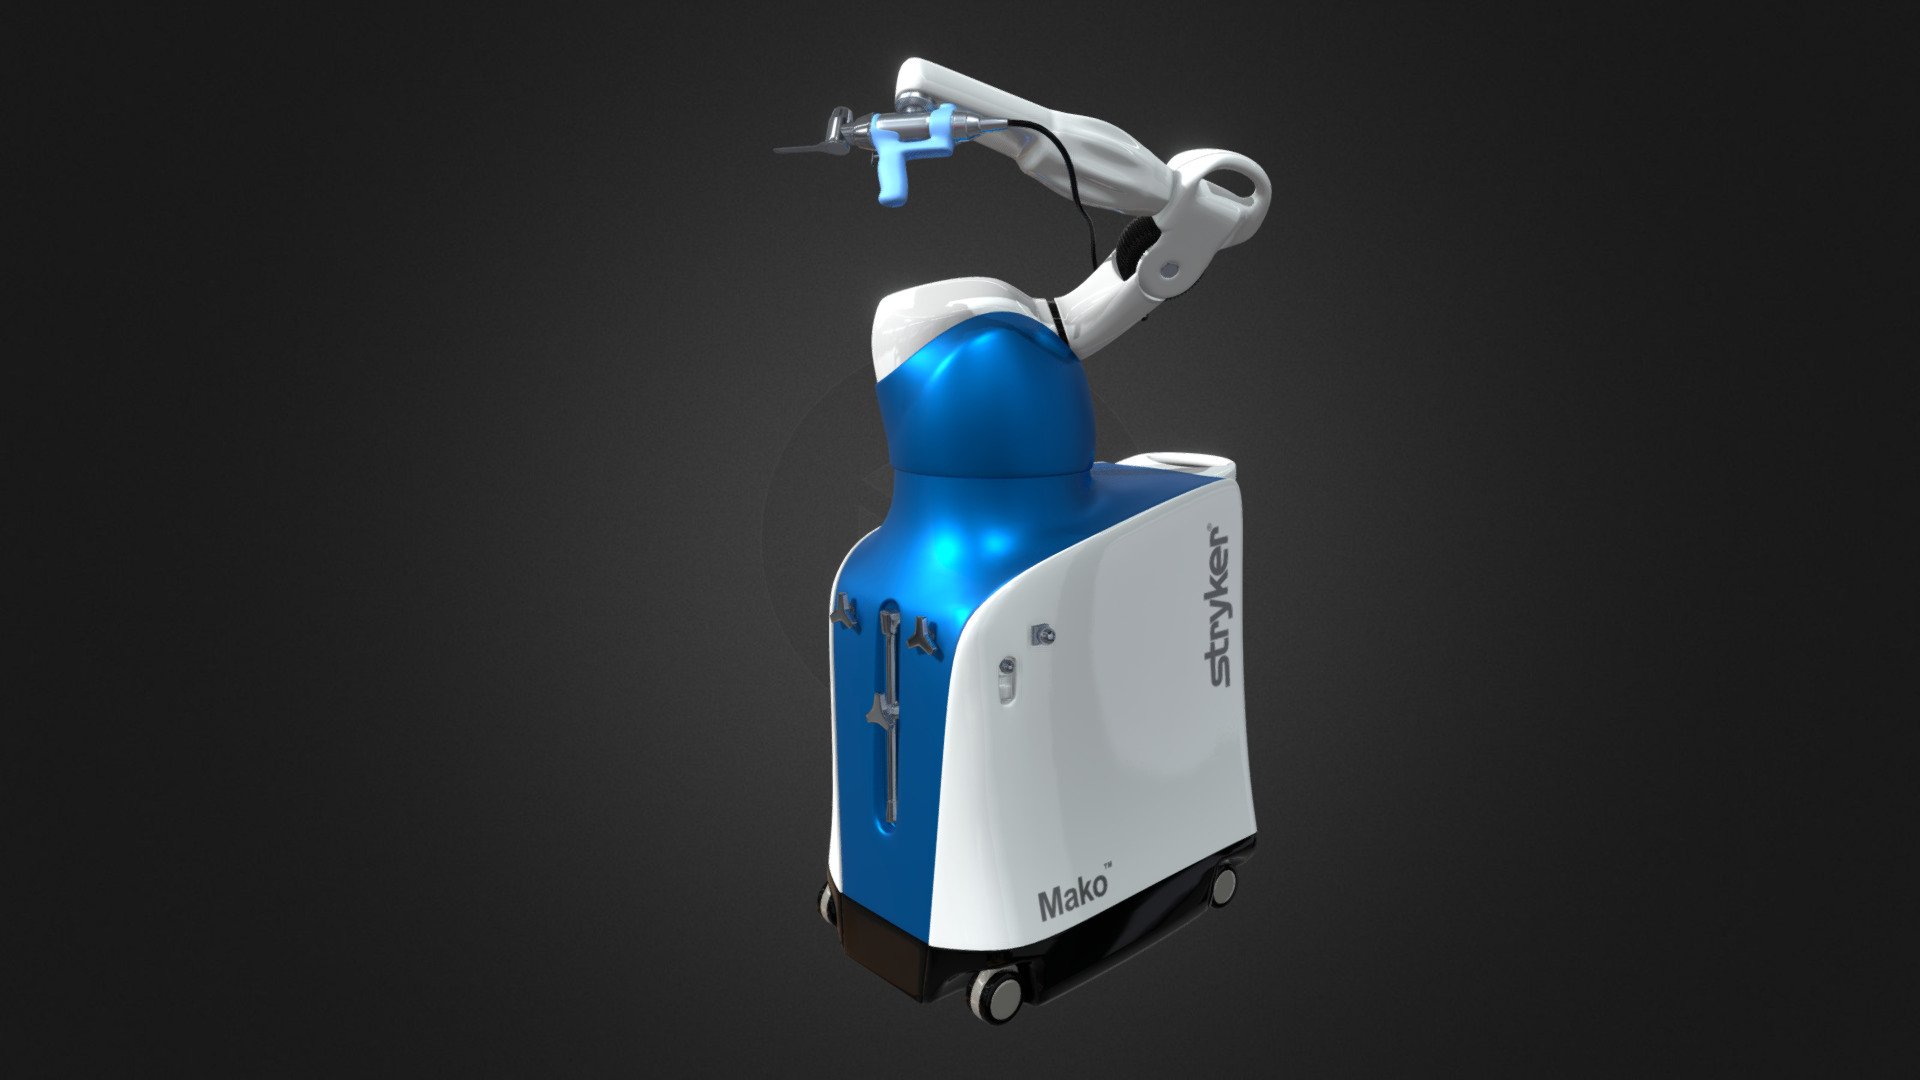 dave3dguy
Mako robot - BioflightVR MK RB PBR - 3D model by Dave3Dguy 3d model